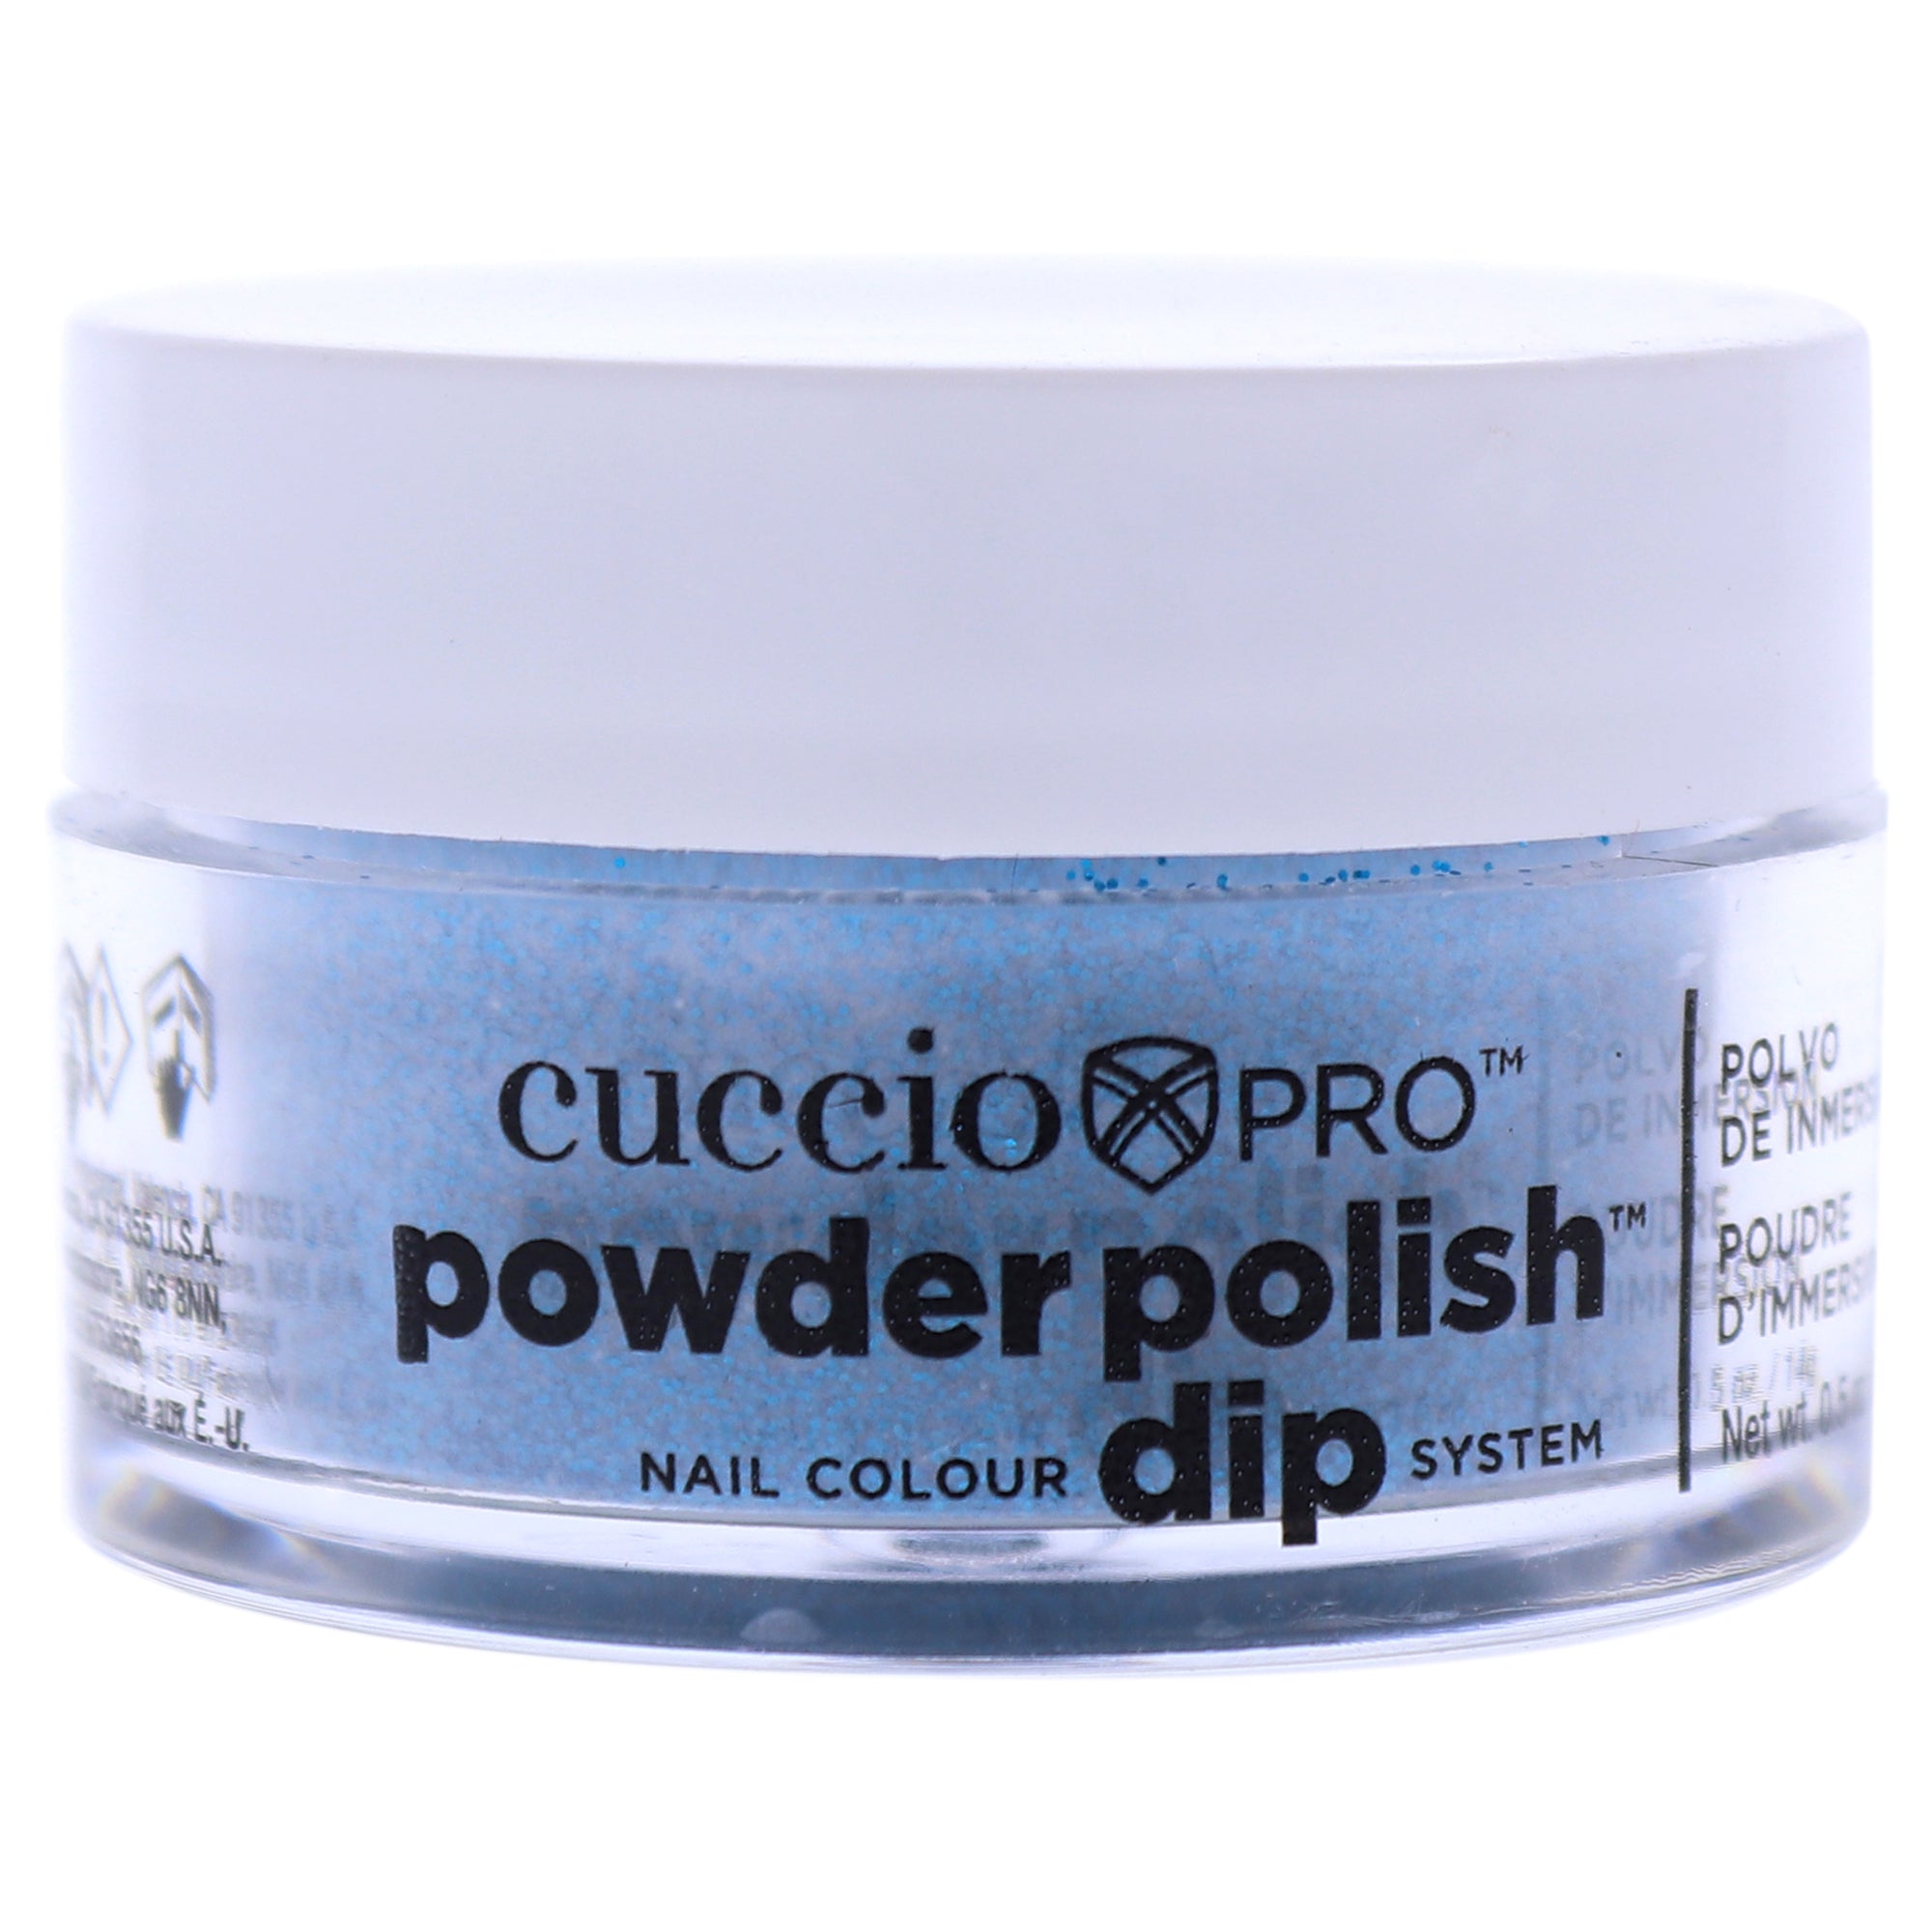 Pro Powder Polish Nail Colour Dip System - Deep Blue Glitter by Cuccio Colour for Women - 0.5 oz Nail Powder